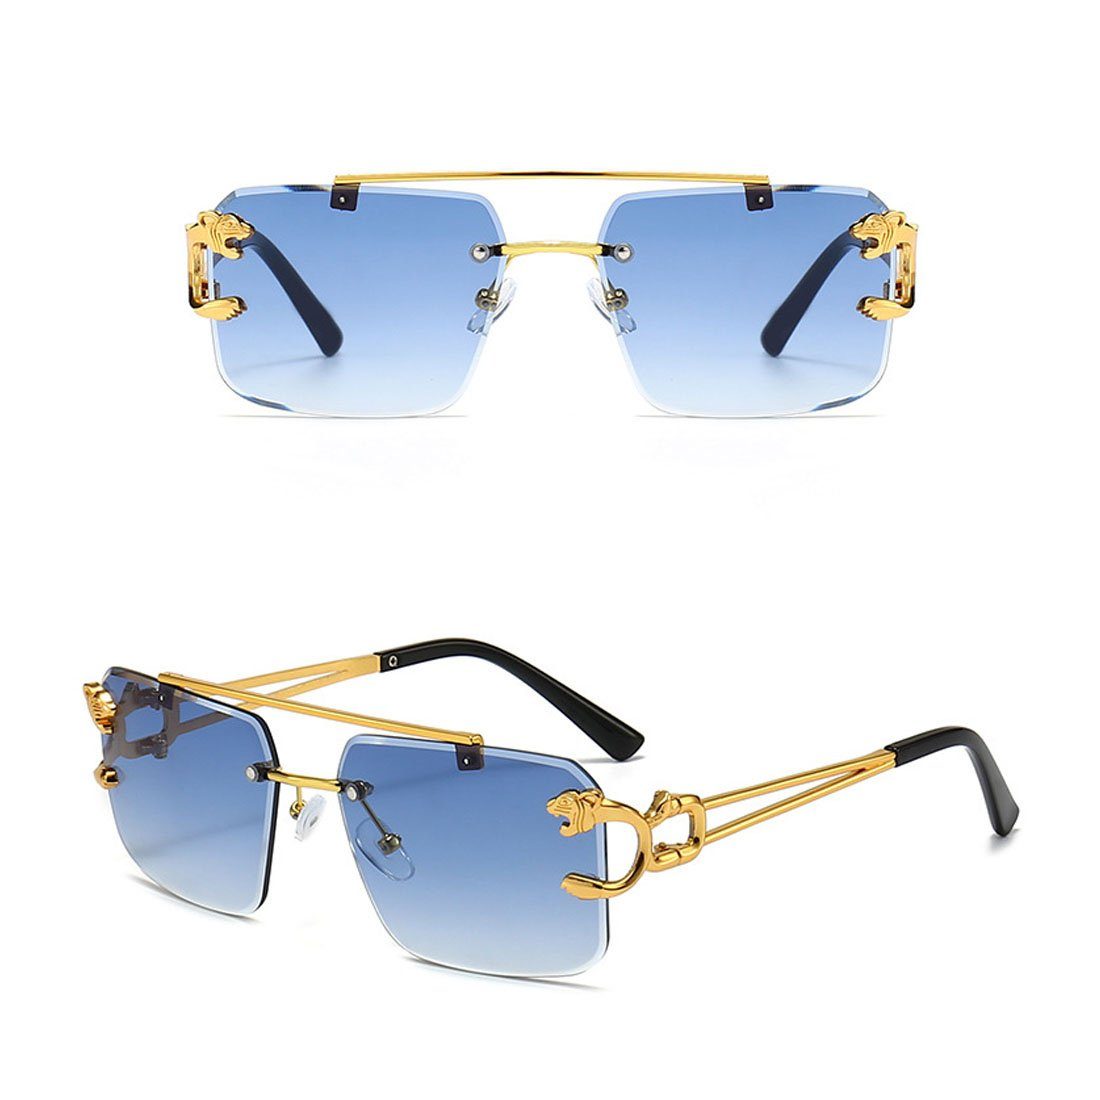 DÖRÖY für blau Damen-Retro-Sonnenbrille ohne Rand, draußen Herren-Sonnenbrille Sonnenbrille